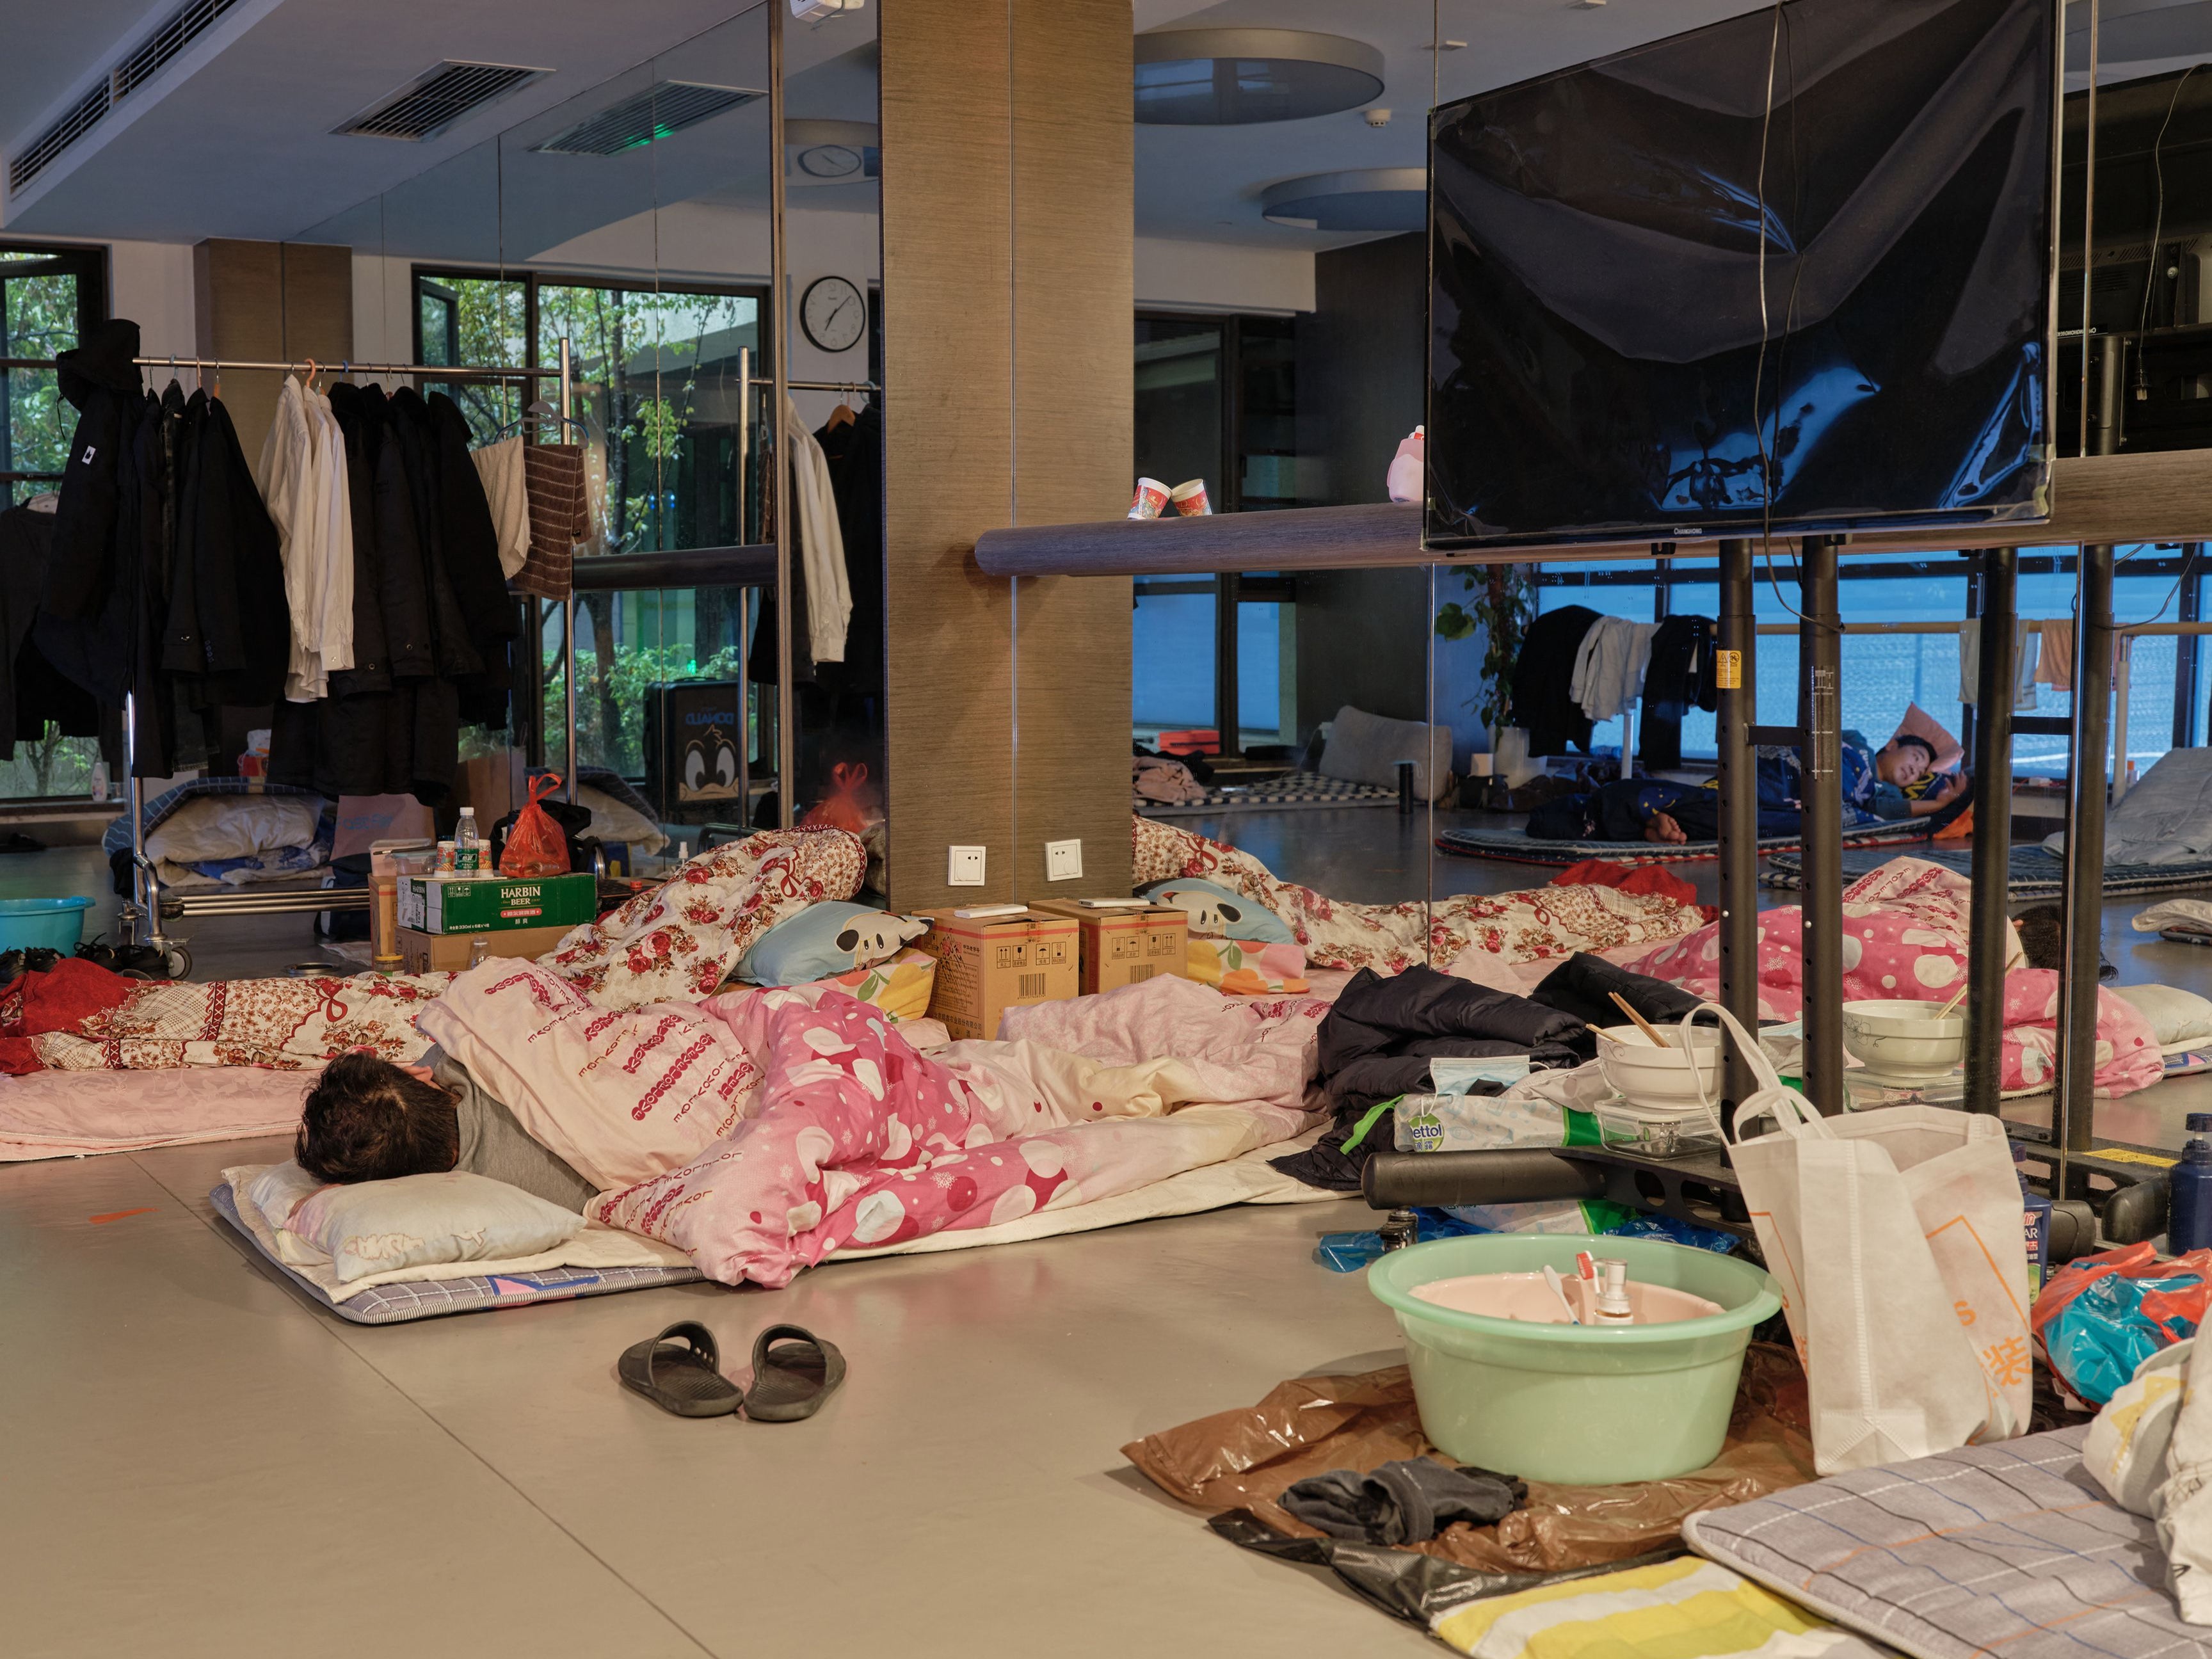 <p>Un trabajador comunitario toma una siesta en una cama temporal en un gimnasio durante un confinamiento por covid-19 en el distrito Pudong de Shanghái </p>